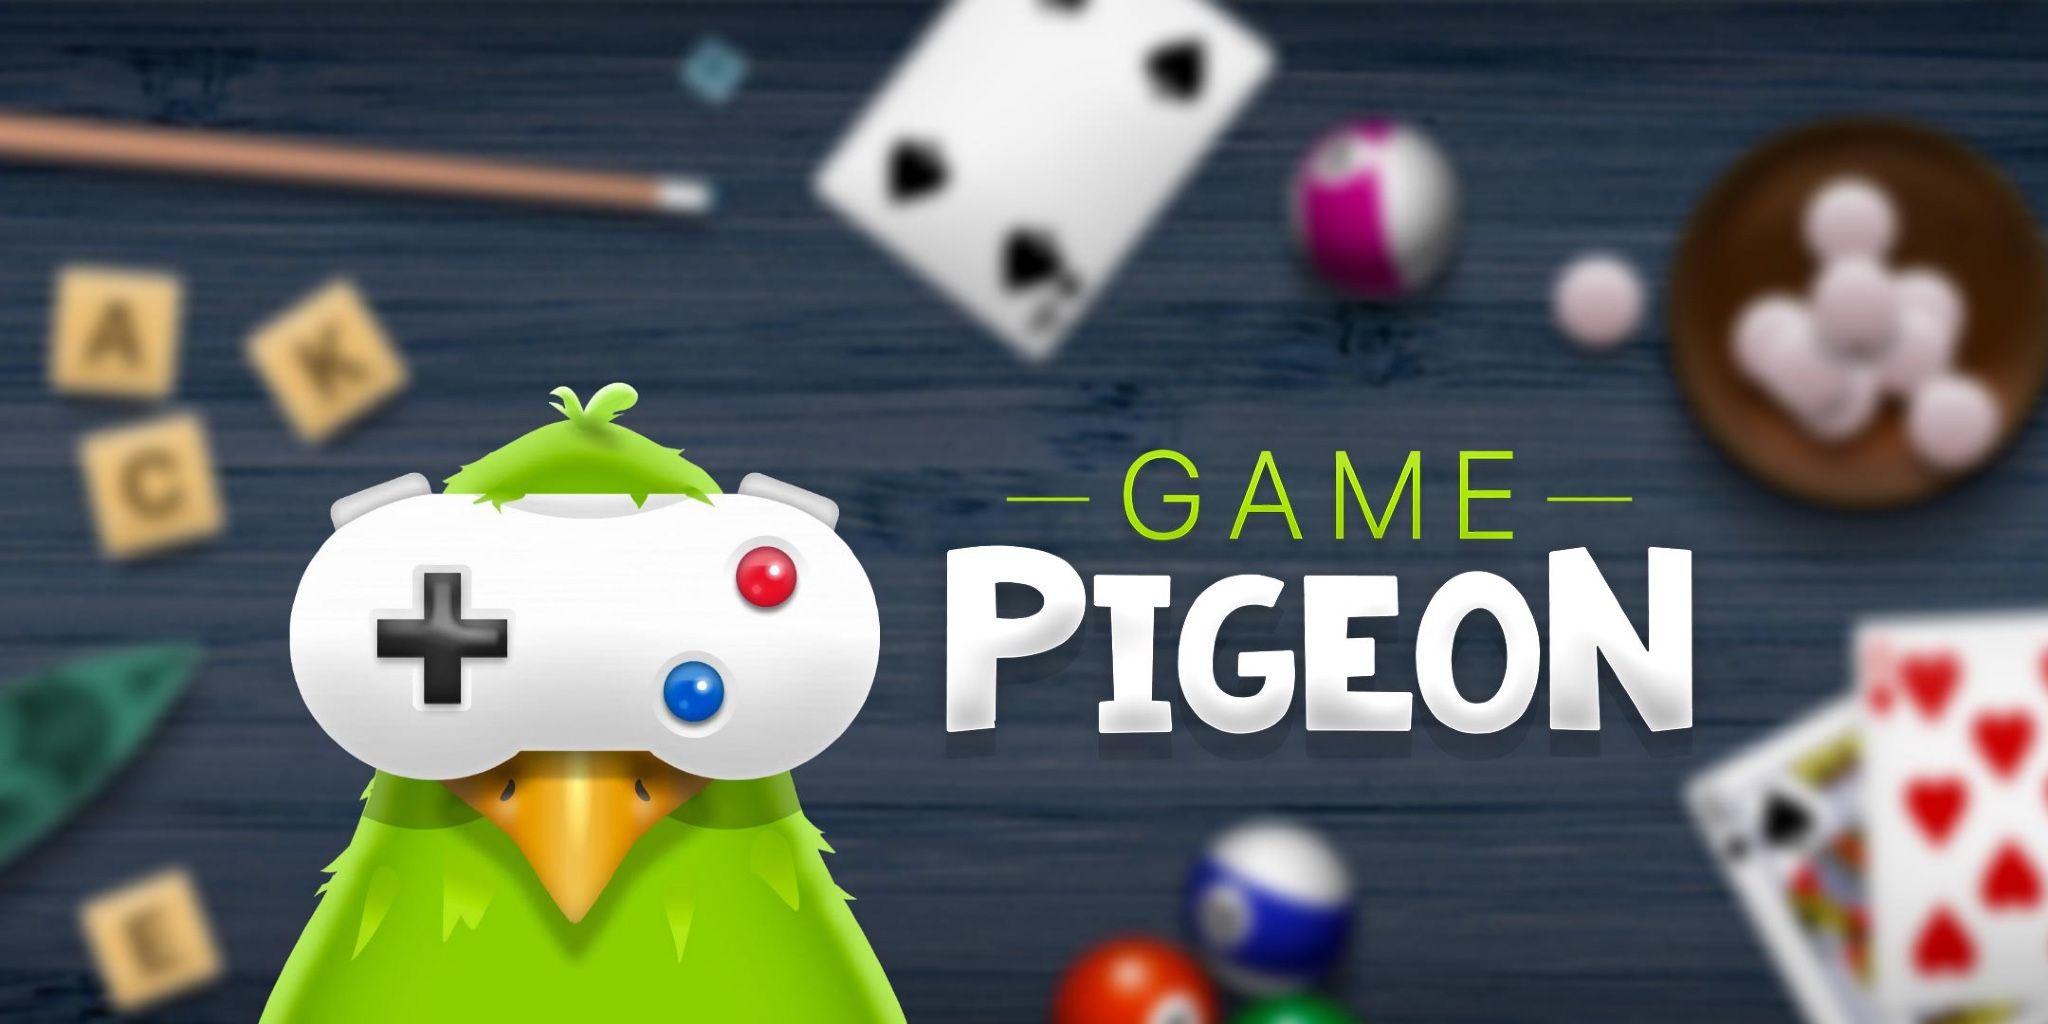 GamePigeon para Android - você pode jogar e melhores alternativas